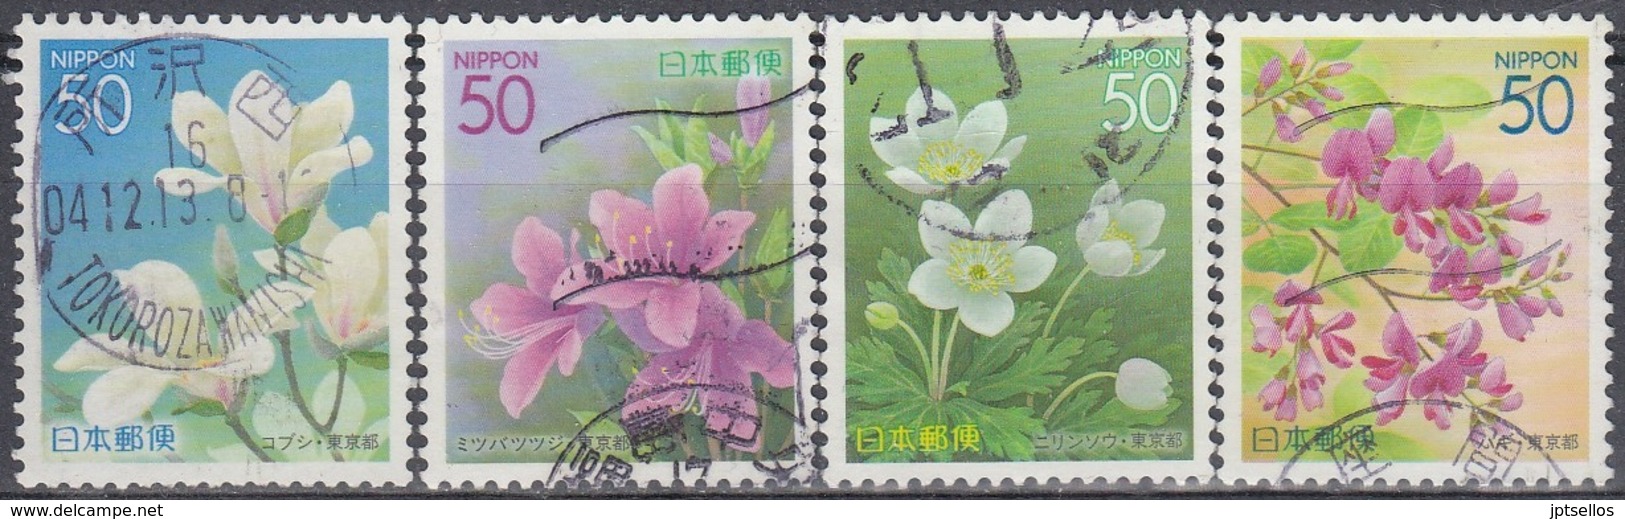 JAPON 2004 Nº 3525/28 USADO - Used Stamps